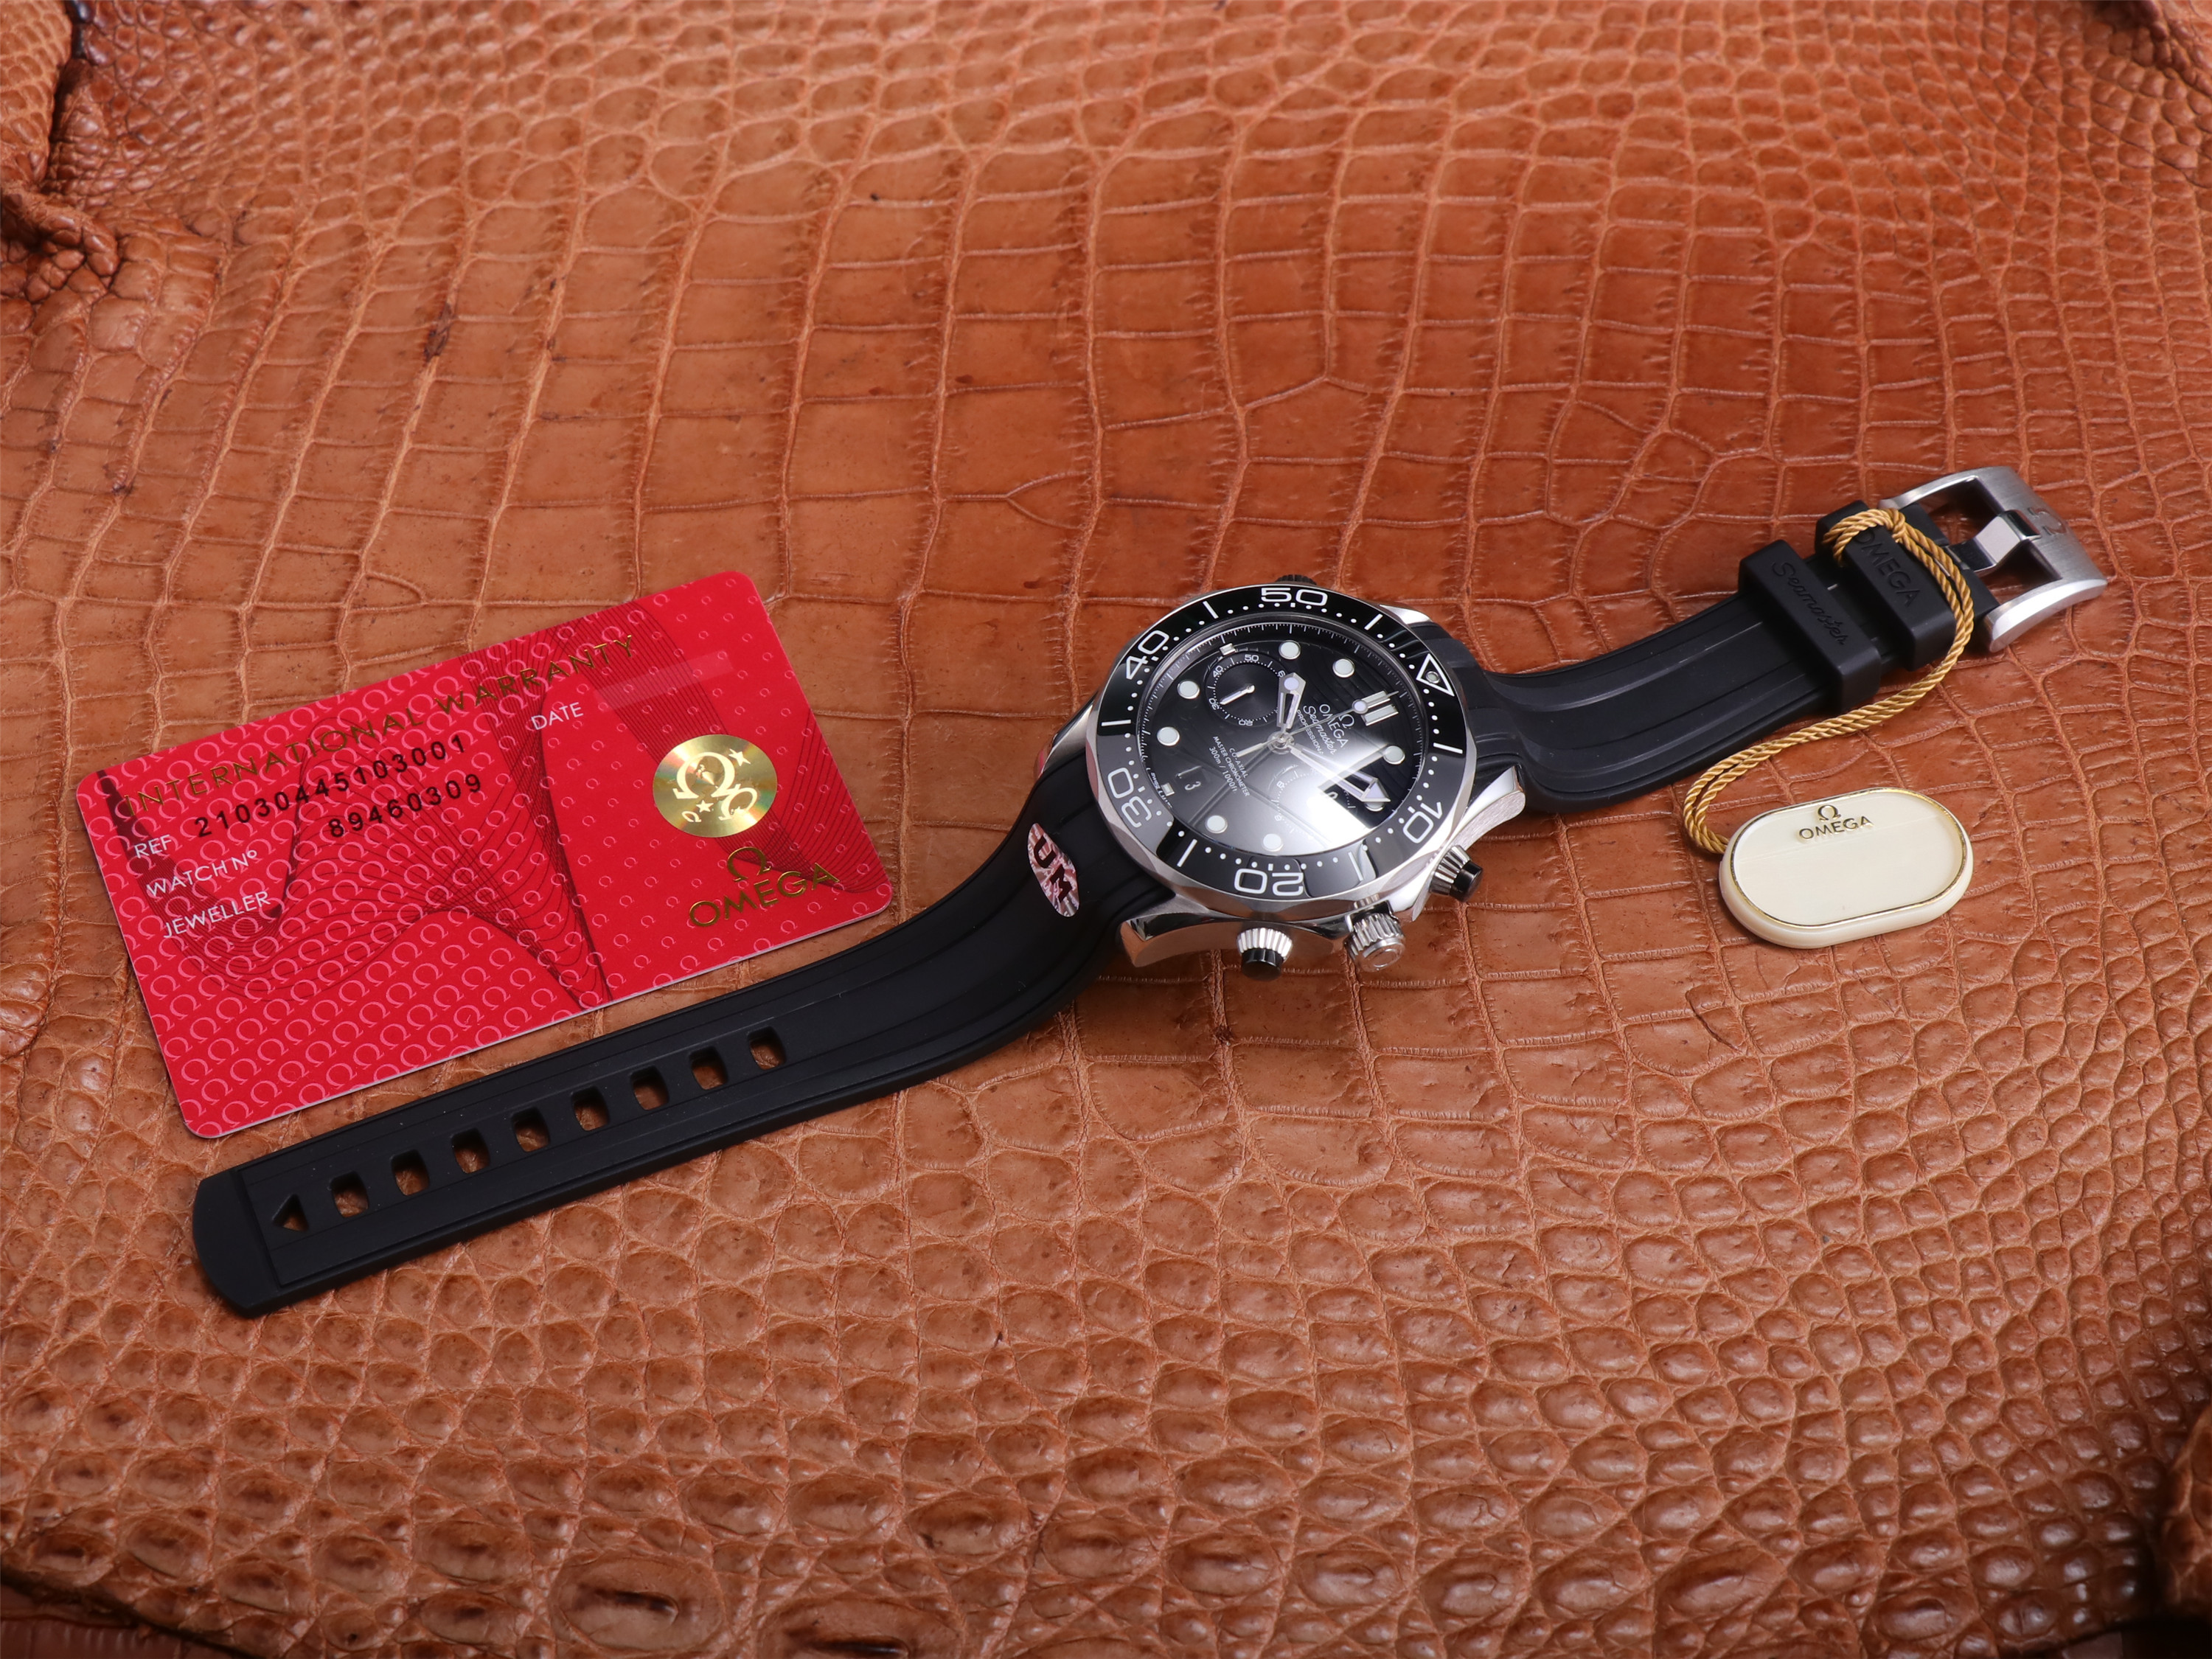 一比一高仿歐米茄新款海馬300m um廠出品 210.32.44.51.01.001一比一高仿錶￥3880-復刻手錶